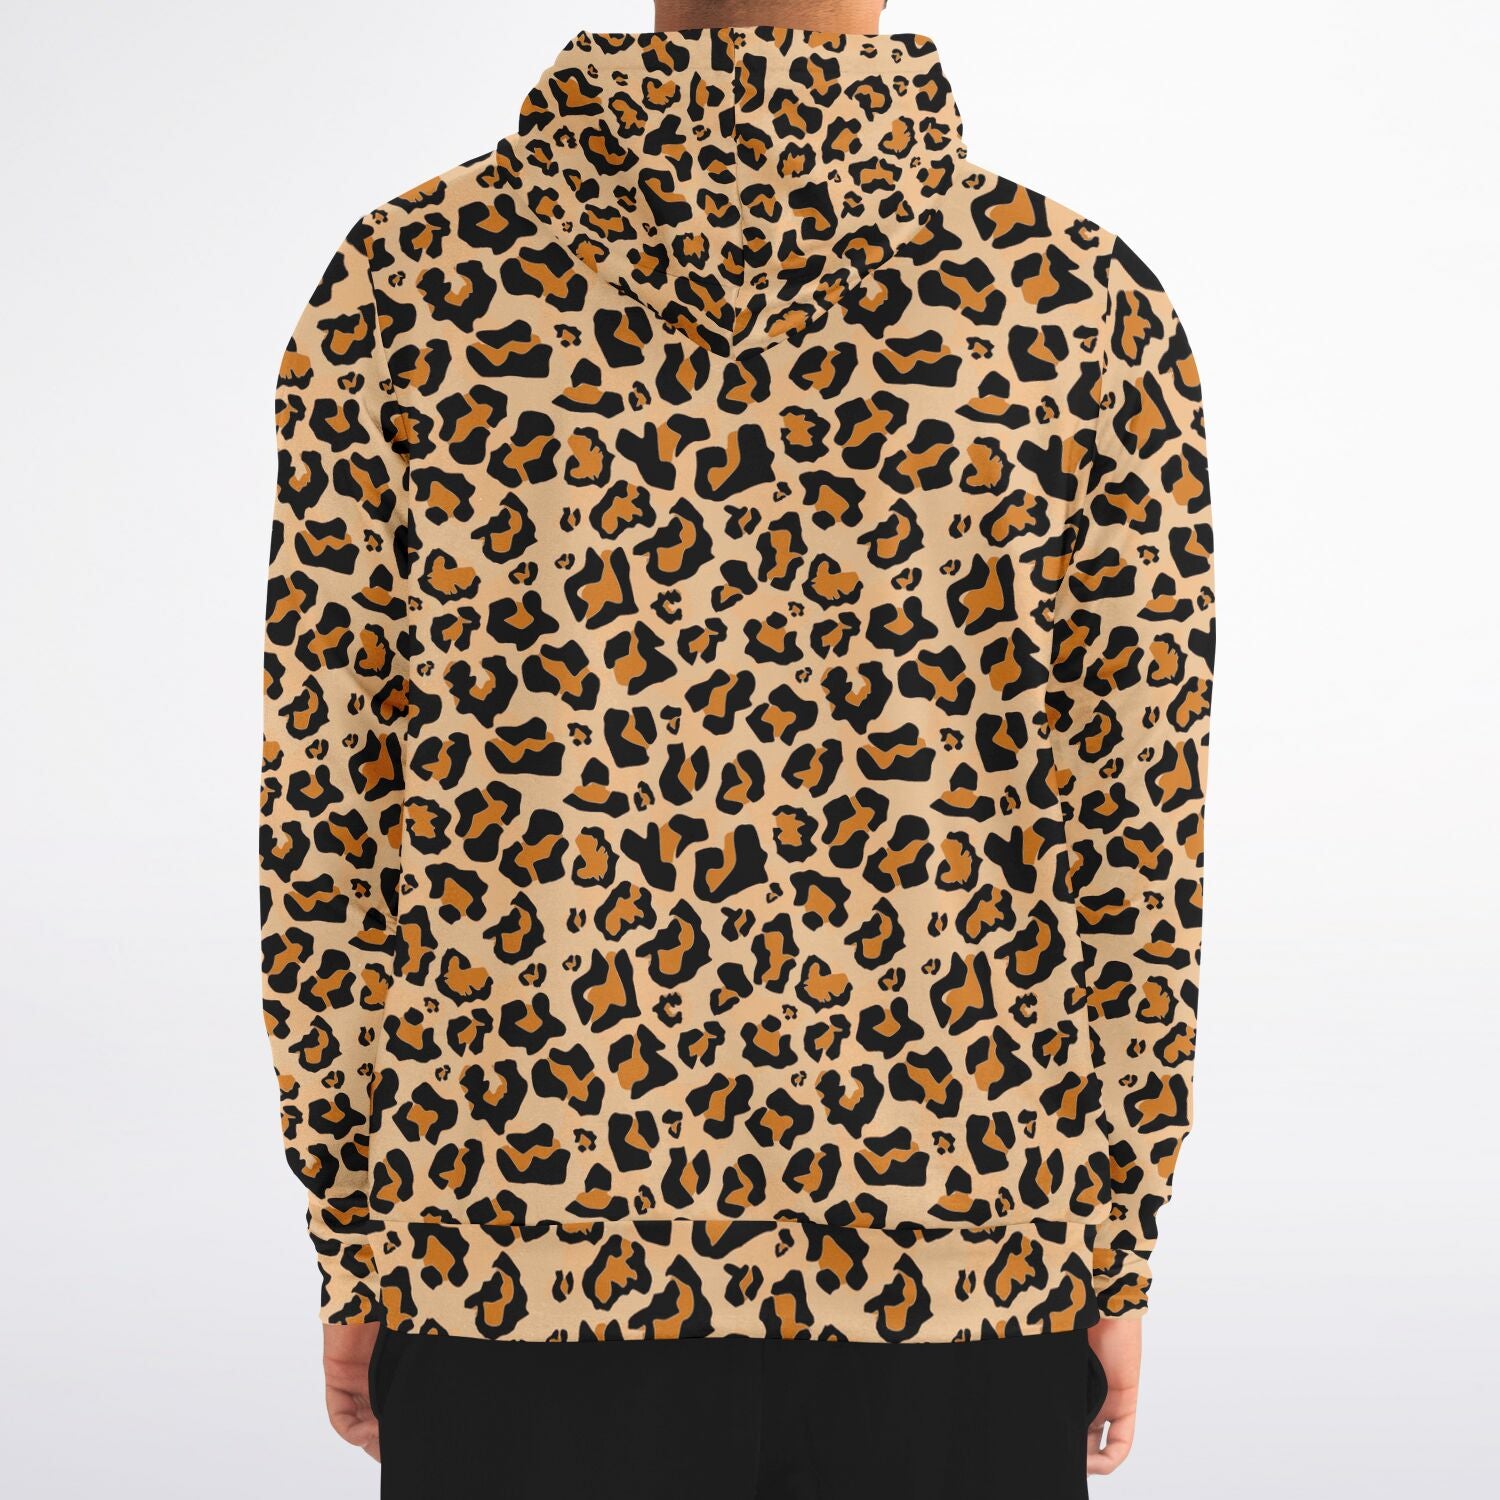 Leopard Zip Up Hoodie, Animal Print Cheetah Front Zipper Pocket Men Women  Unisex Adult Aesthetic Graphic Cotton Fleece Hooded Sweatshirt